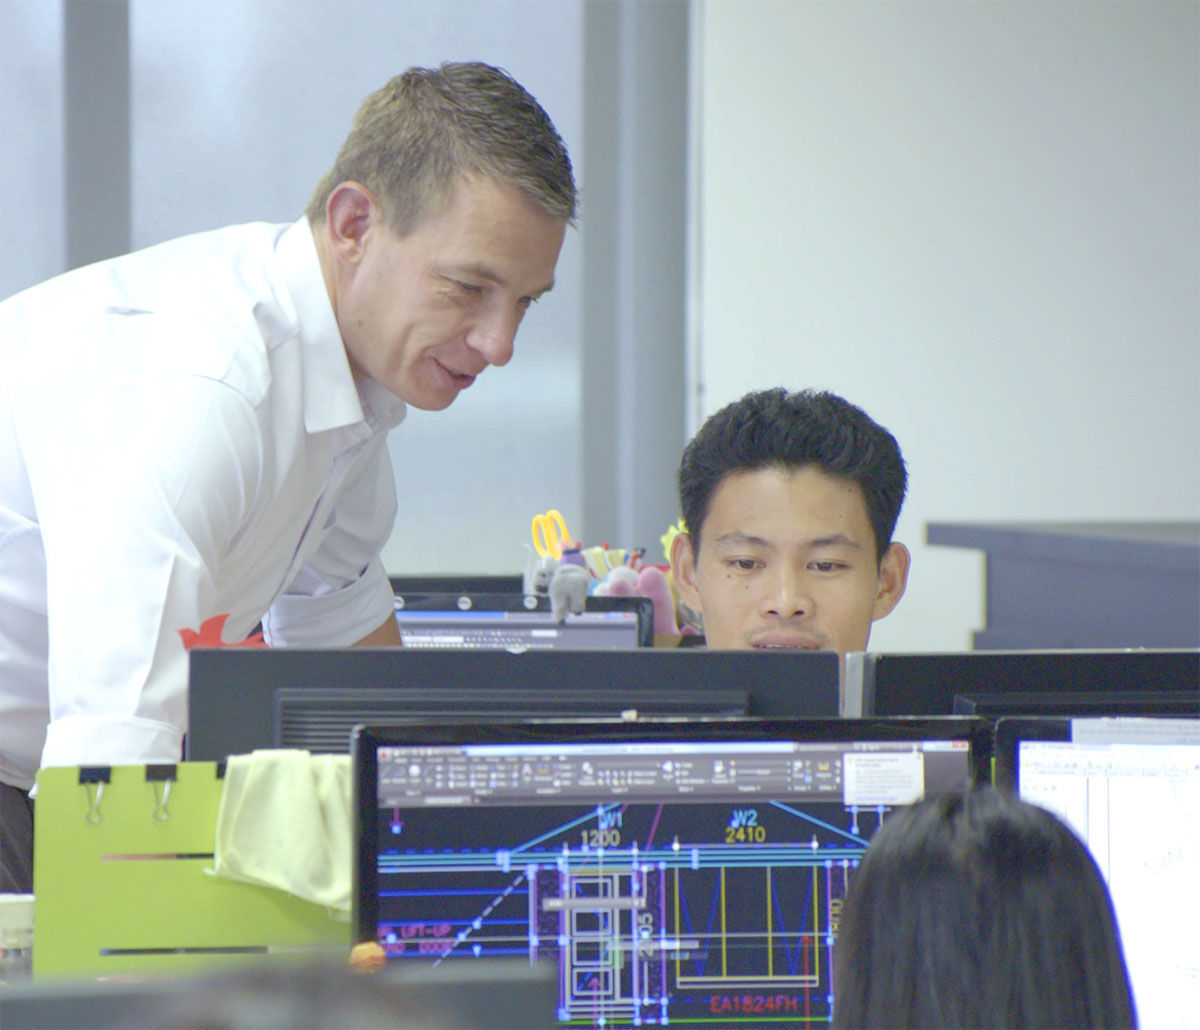 MiTek Structural Value Engineering Innovation Services - Deux hommes à un bureau travaillant sur un ordinateur.